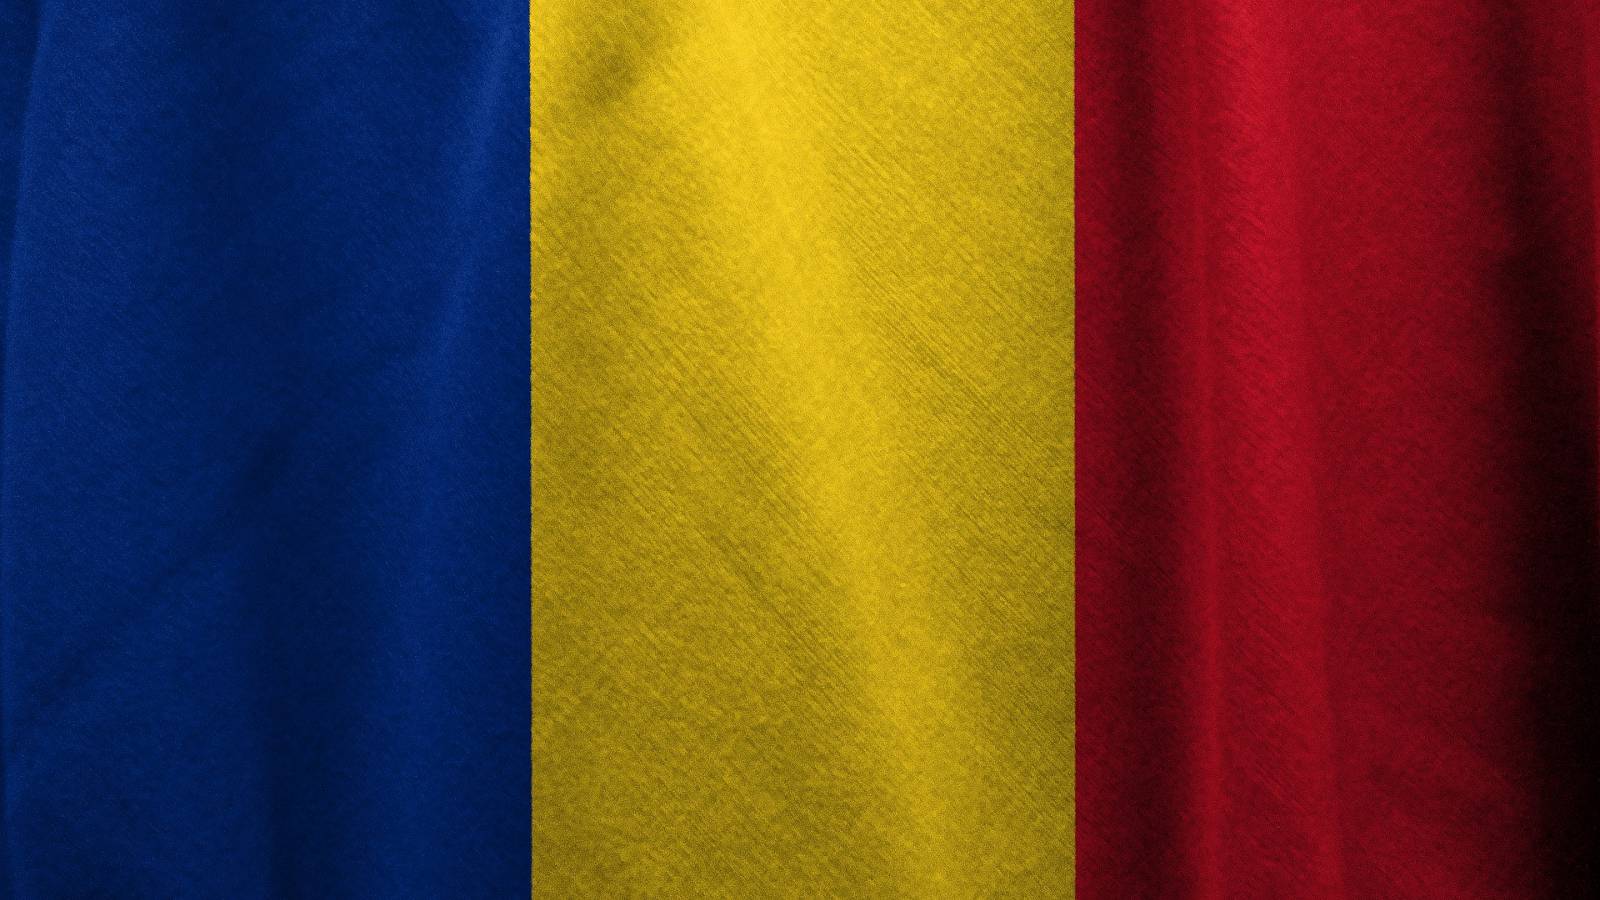 Kuinka paljon uudet COVID-19-tapaukset ovat vähentyneet Romaniassa viimeisen 7 päivän aikana